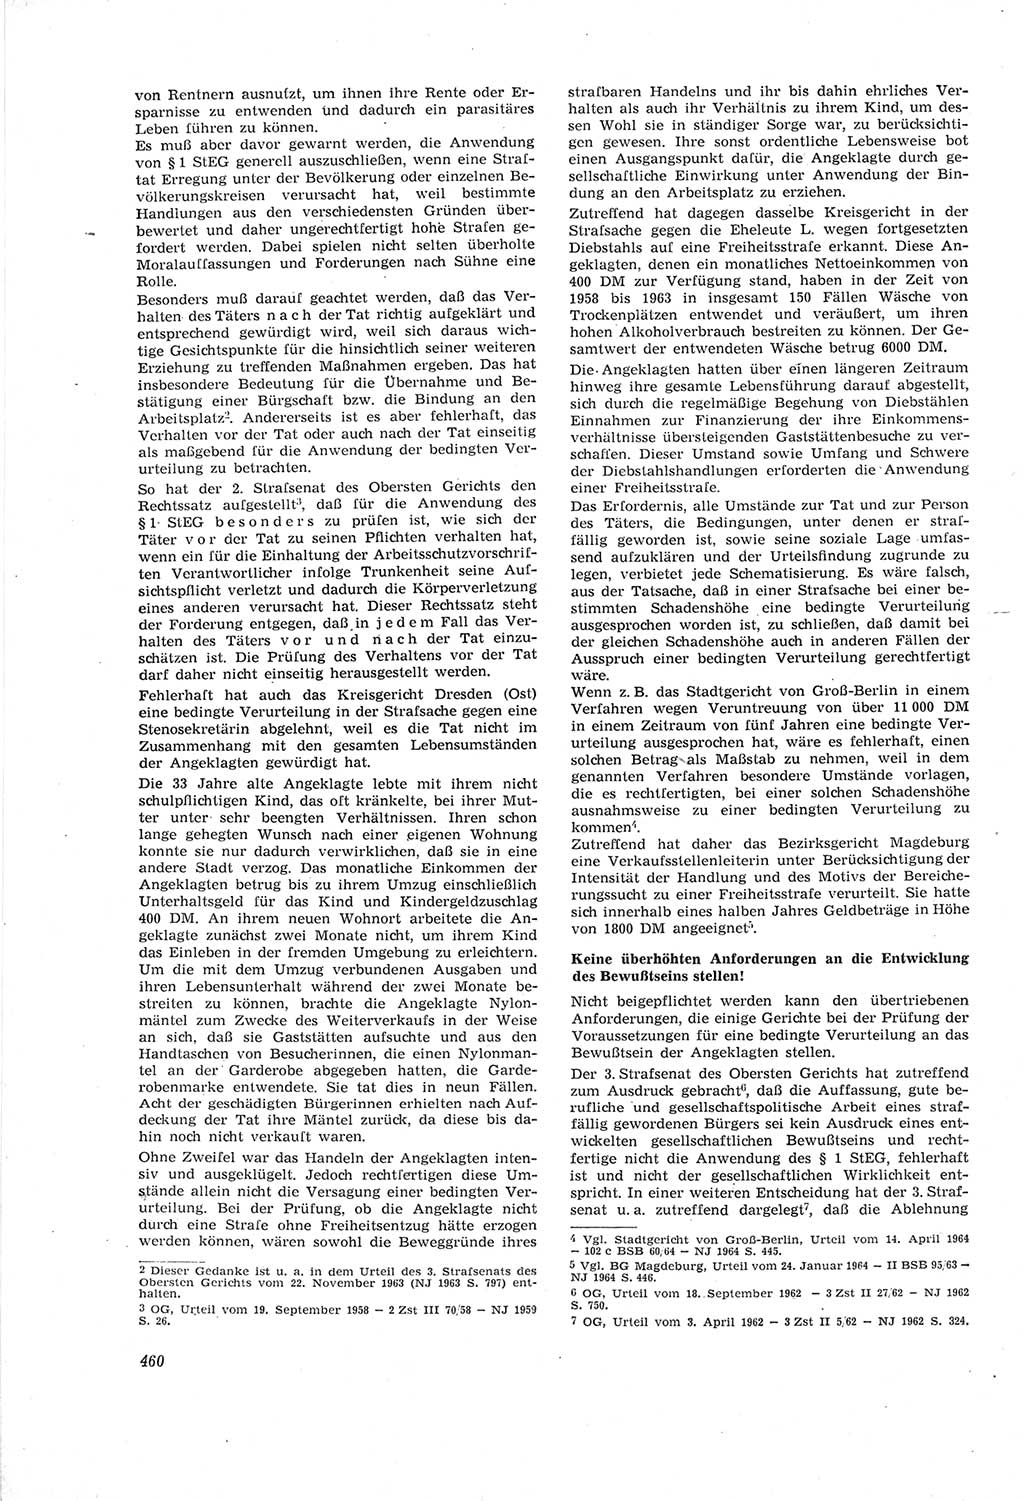 Neue Justiz (NJ), Zeitschrift für Recht und Rechtswissenschaft [Deutsche Demokratische Republik (DDR)], 18. Jahrgang 1964, Seite 460 (NJ DDR 1964, S. 460)